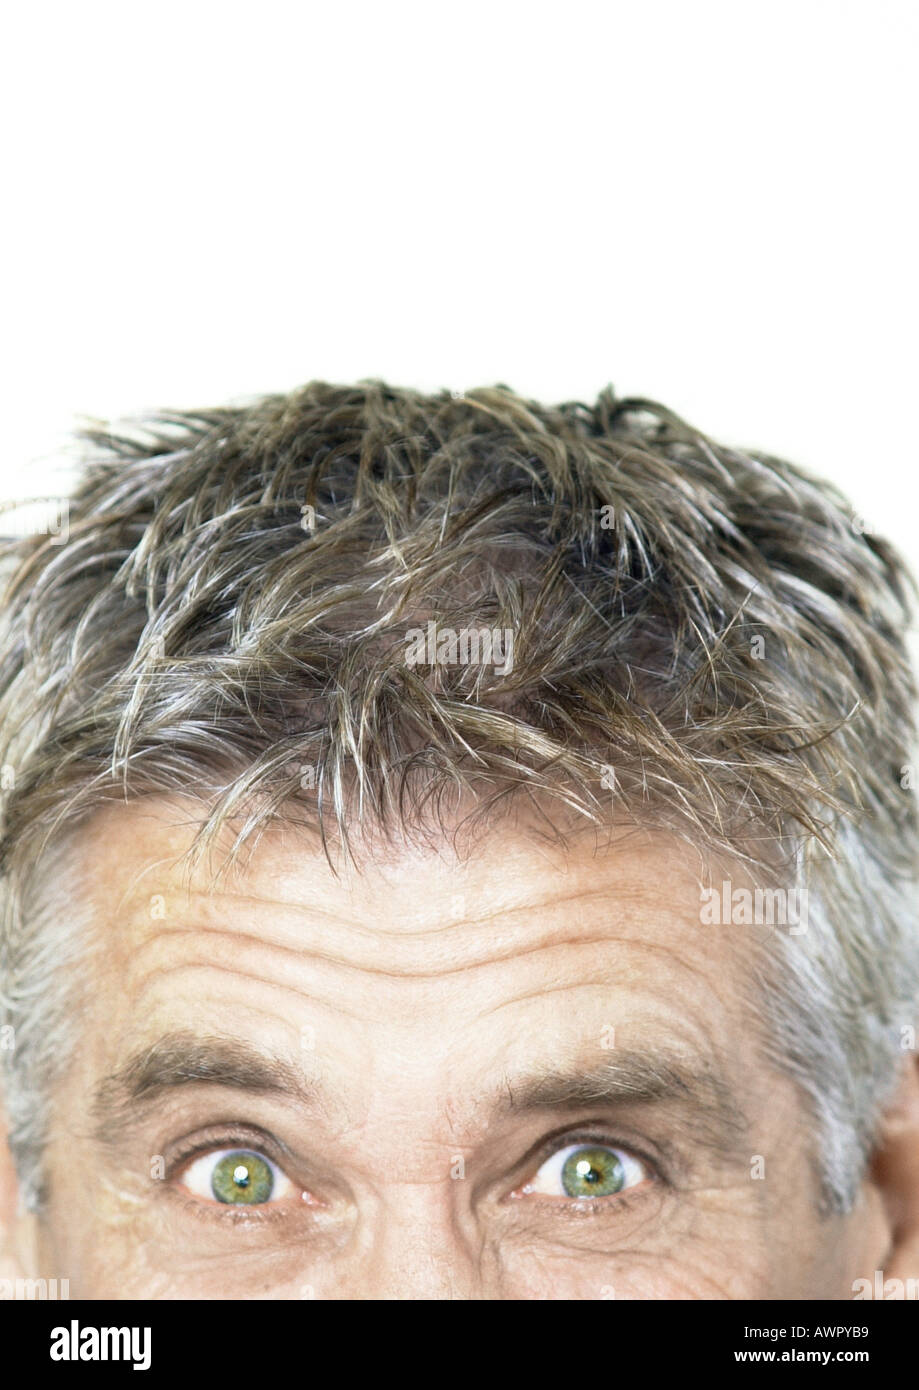 Mature man raising eyebrows and looking at camera, partial view, close-up Stock Photo